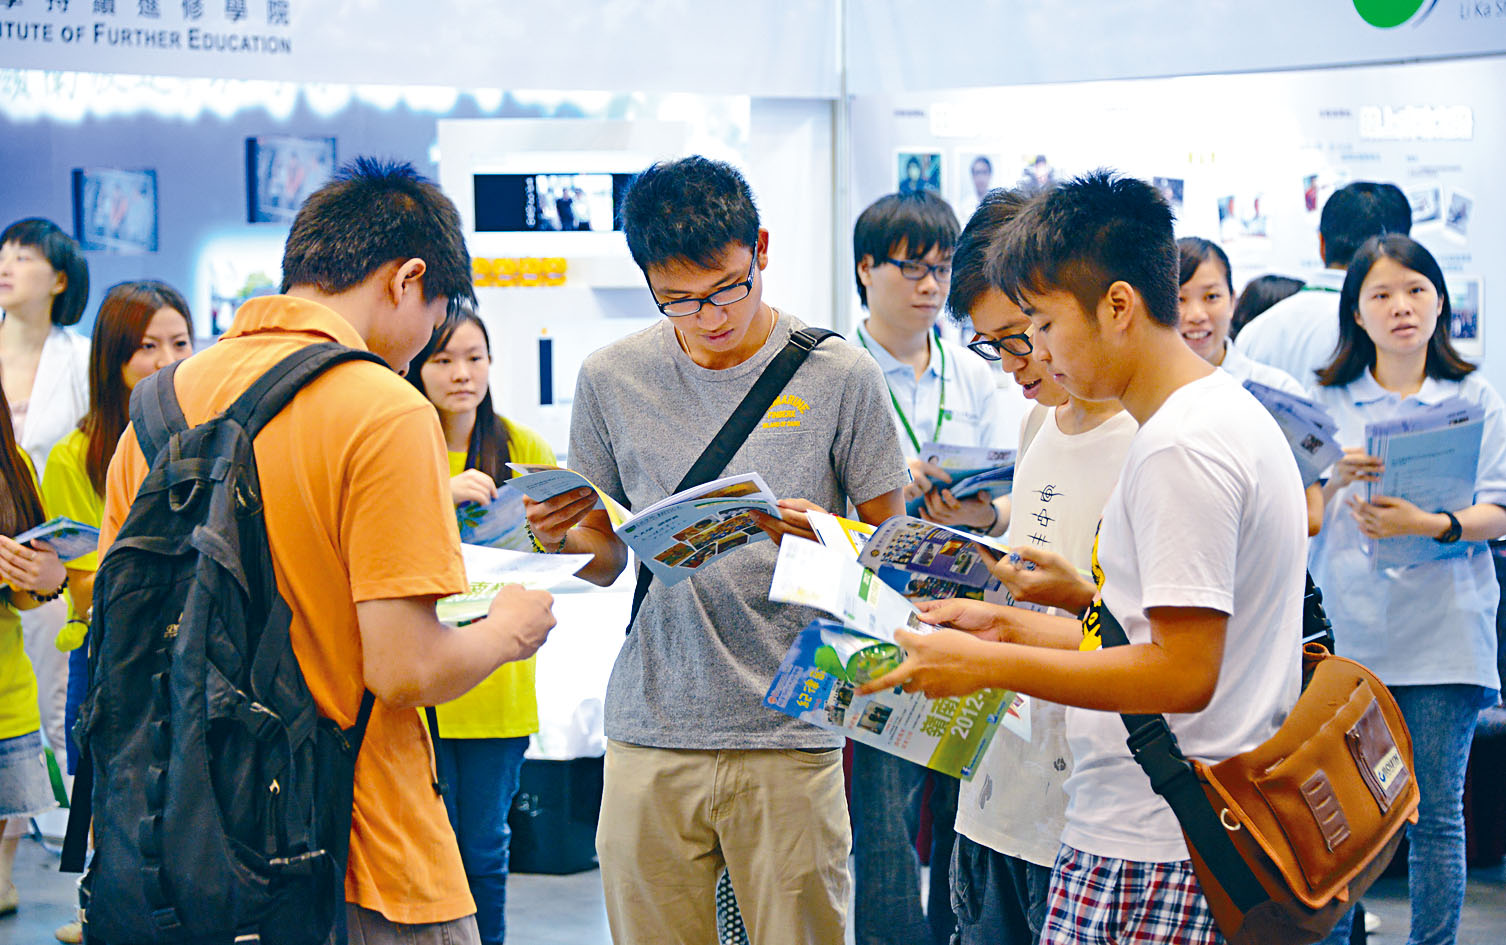 現時香港有不同升學途徑，適合不同程度的學生。葉偉民表示，文憑試低分學生也有出路。